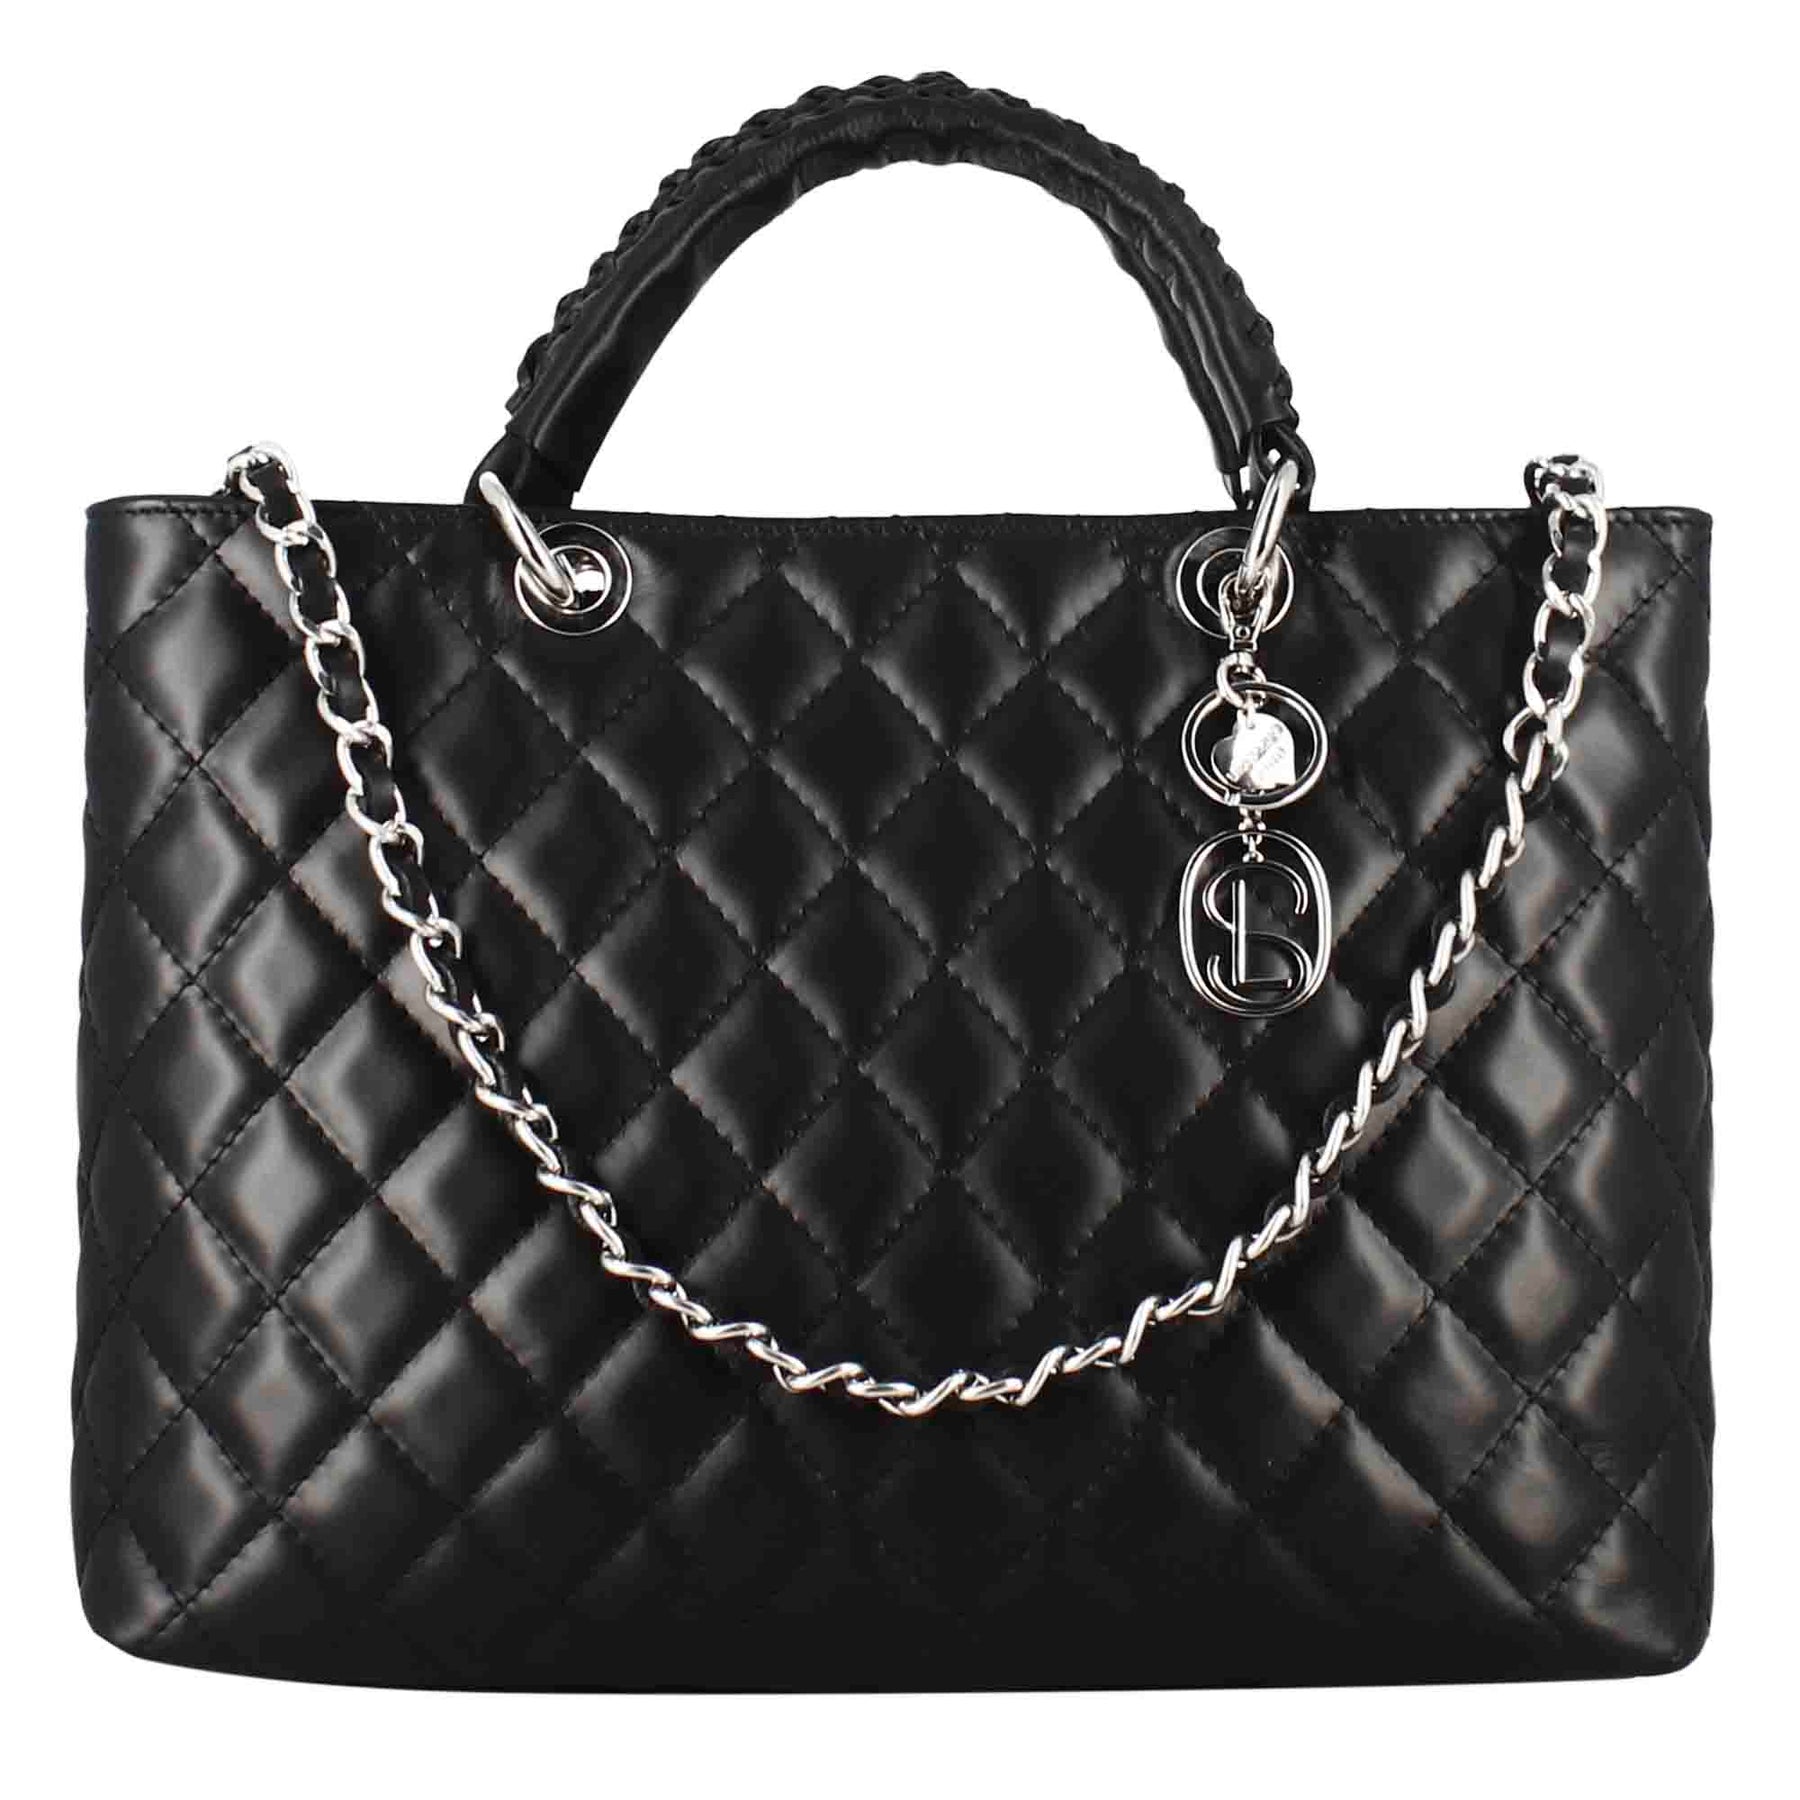 Vanity shopper bag with black quilted leather shoulder strap